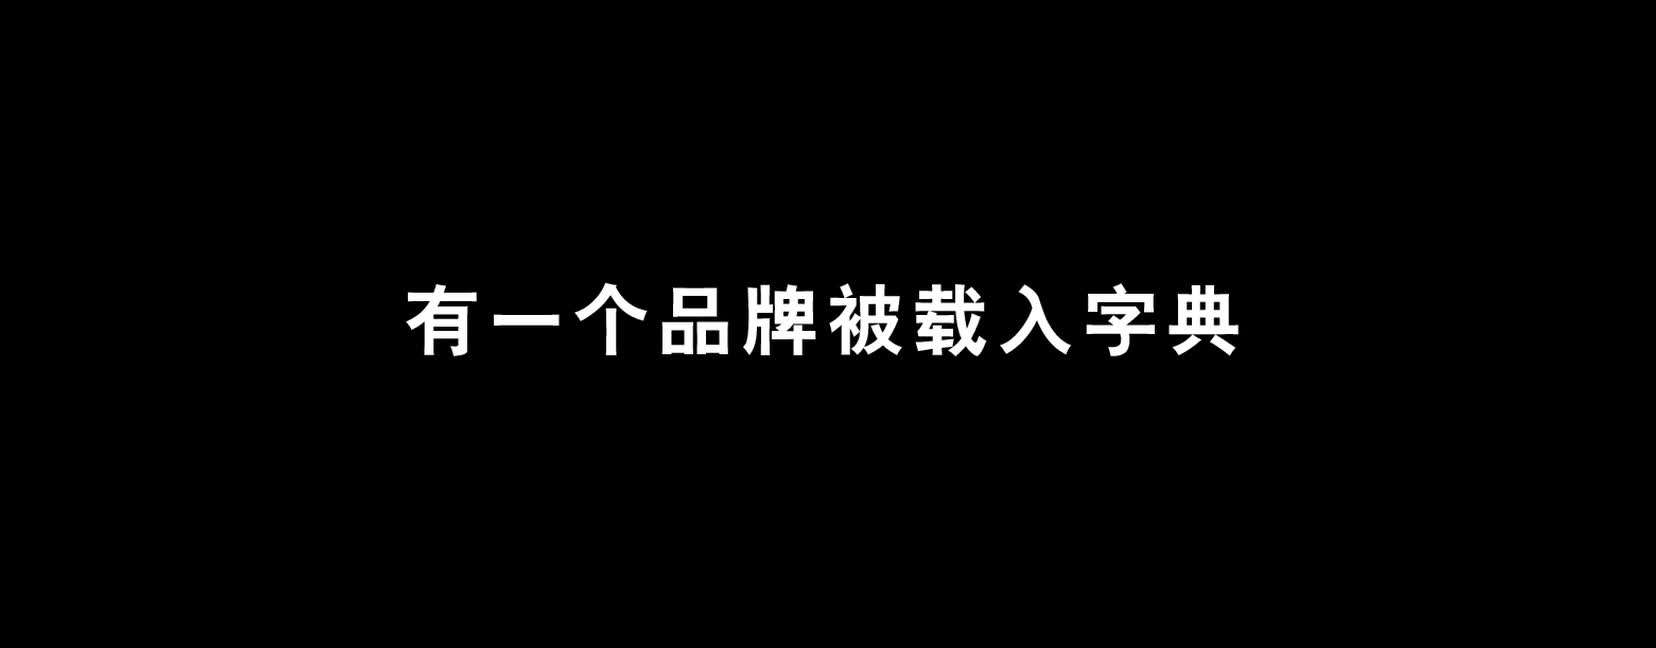 cadillac上海车展开幕影片